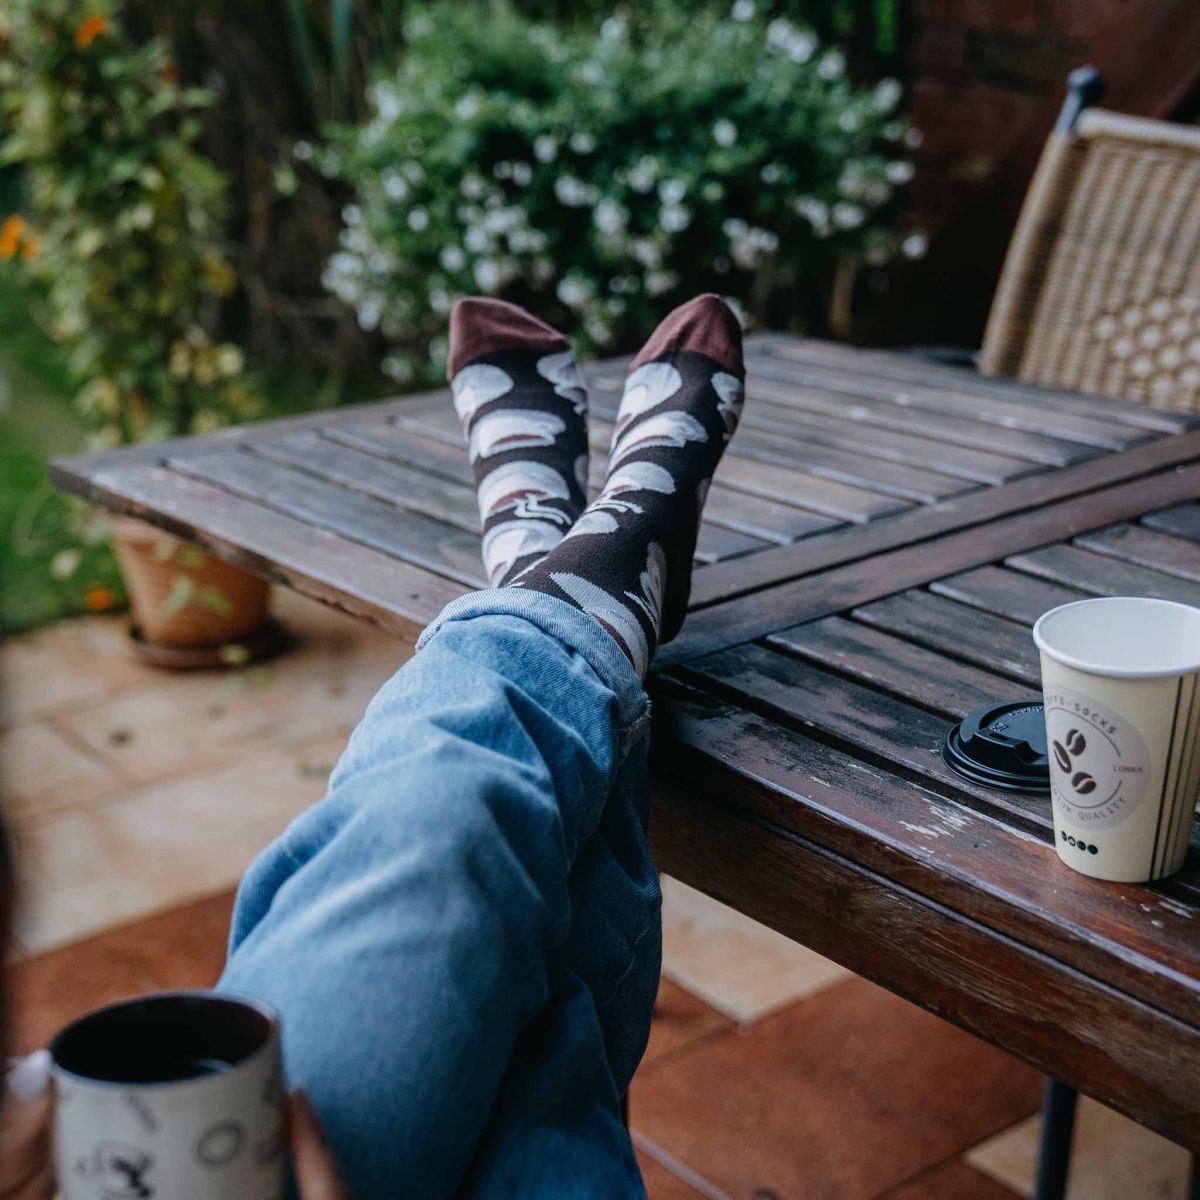 Ponožky - Káva set